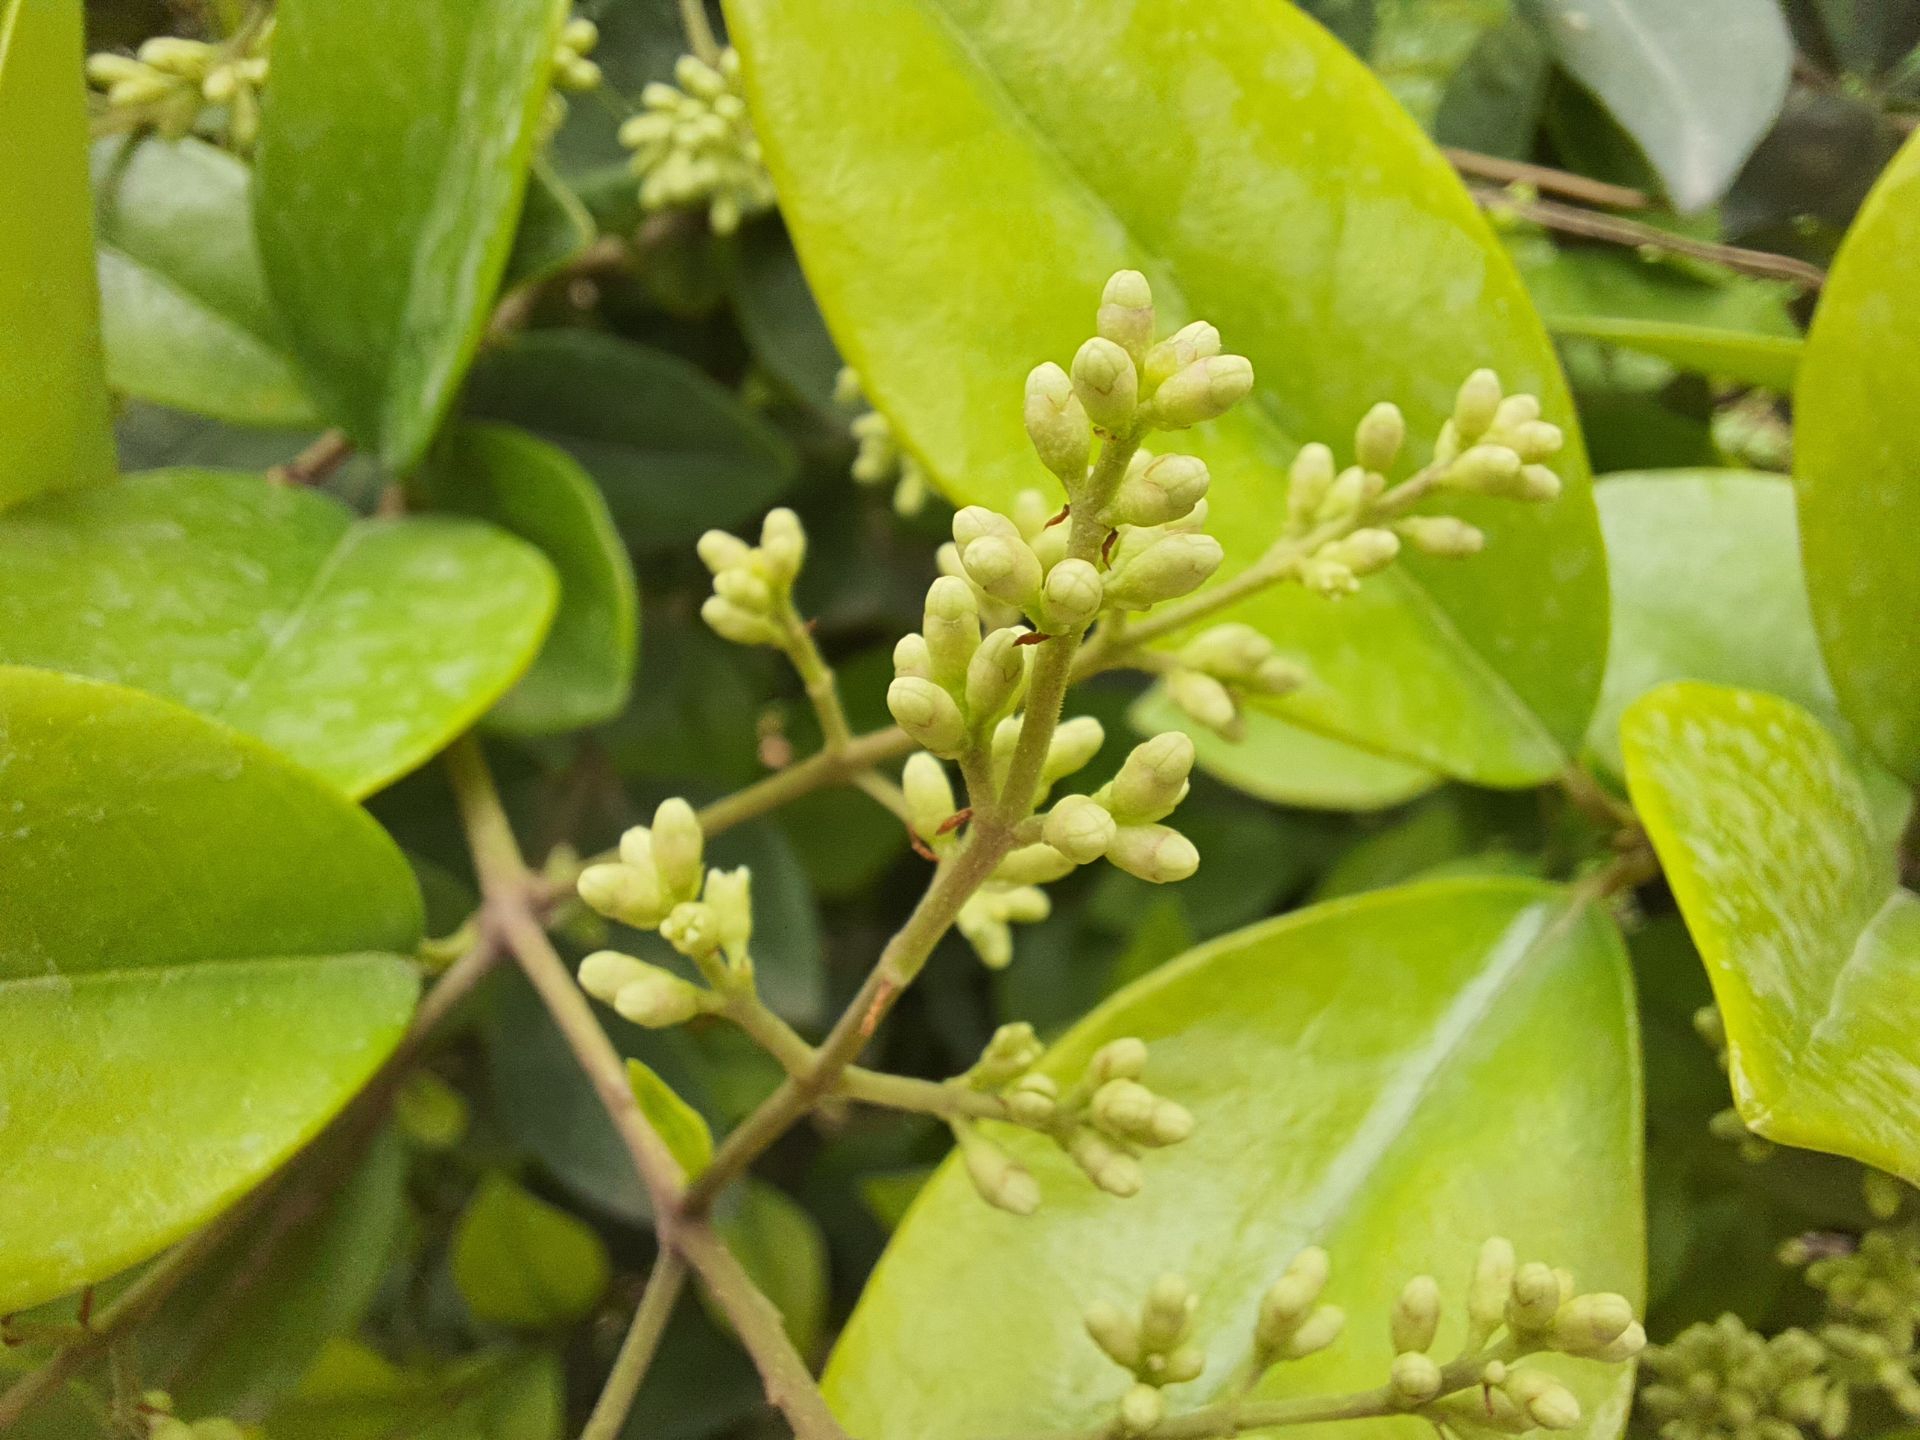 عکس نمونه ماکرو گلکسی M62 سامسونگ - گیاهی از نمای نزدیک